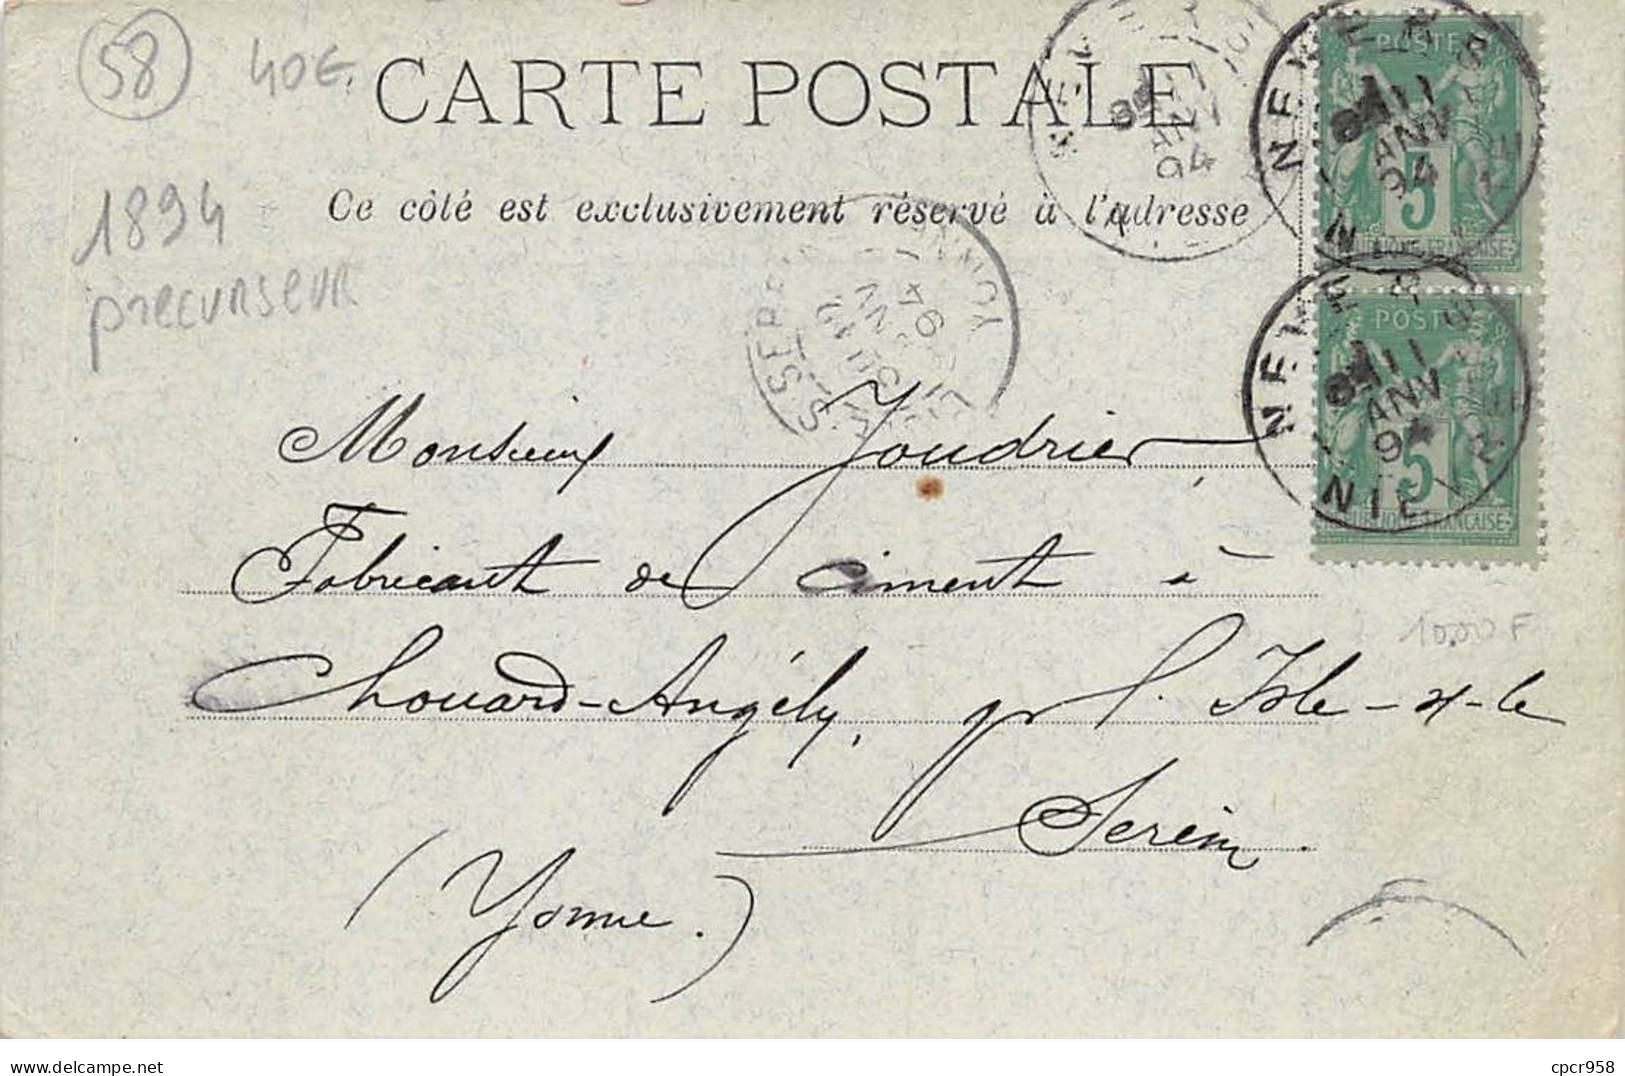 58 - N°90431 - NEVERS - Fabrique De Tuyaux En Ciment Portland Paul Duperrat Fils - Carte Précurseur 1894 - Nevers